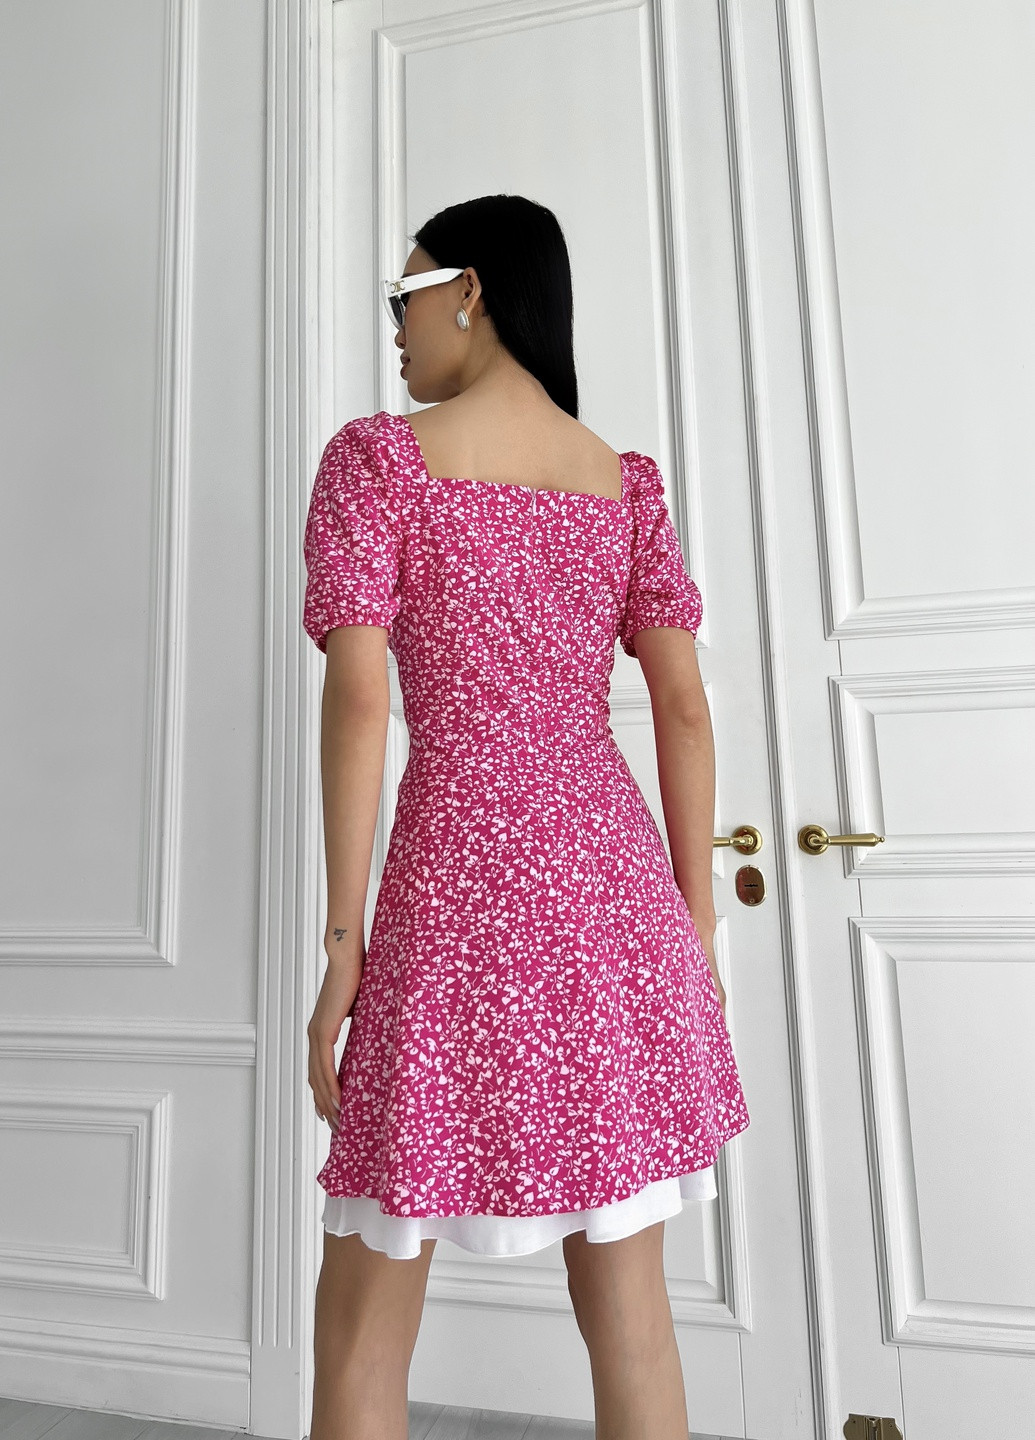 Малинова повсякденний ніжна літня сукня Jadone Fashion з квітковим принтом